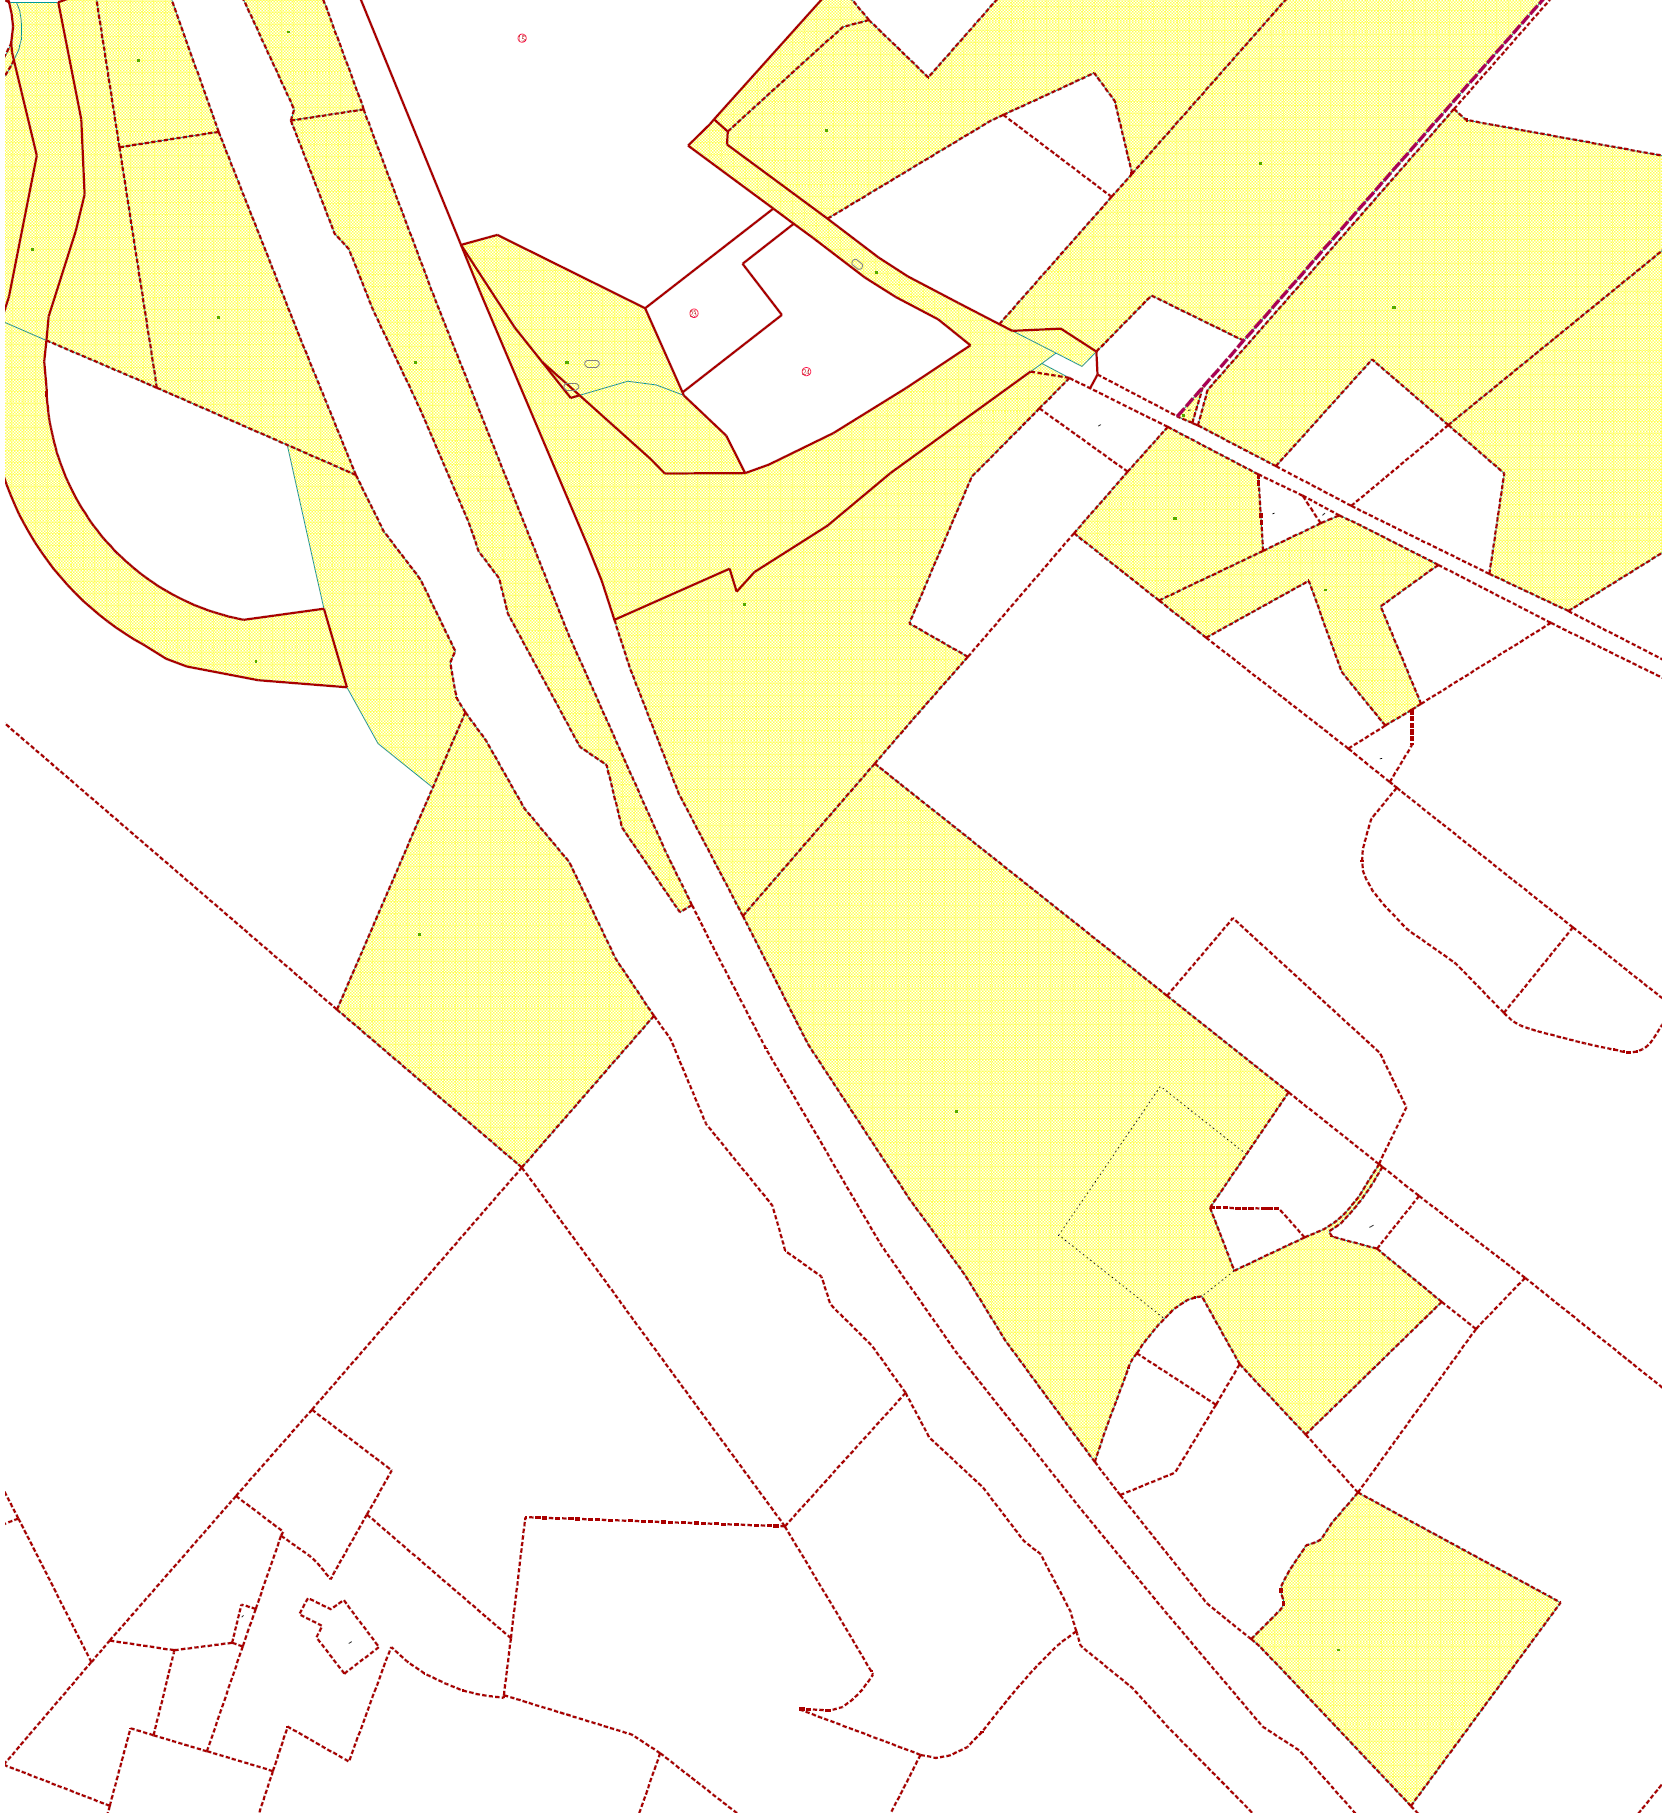 Alue on Riihimäen kaupungin omistuksessa. Ote maanomistuskartasta: kaupungin omistuksessa olevat alueet on merkitty keltaisella, yksityisten omistuksessa olevat alueet on merkitty valkoisella. 3.